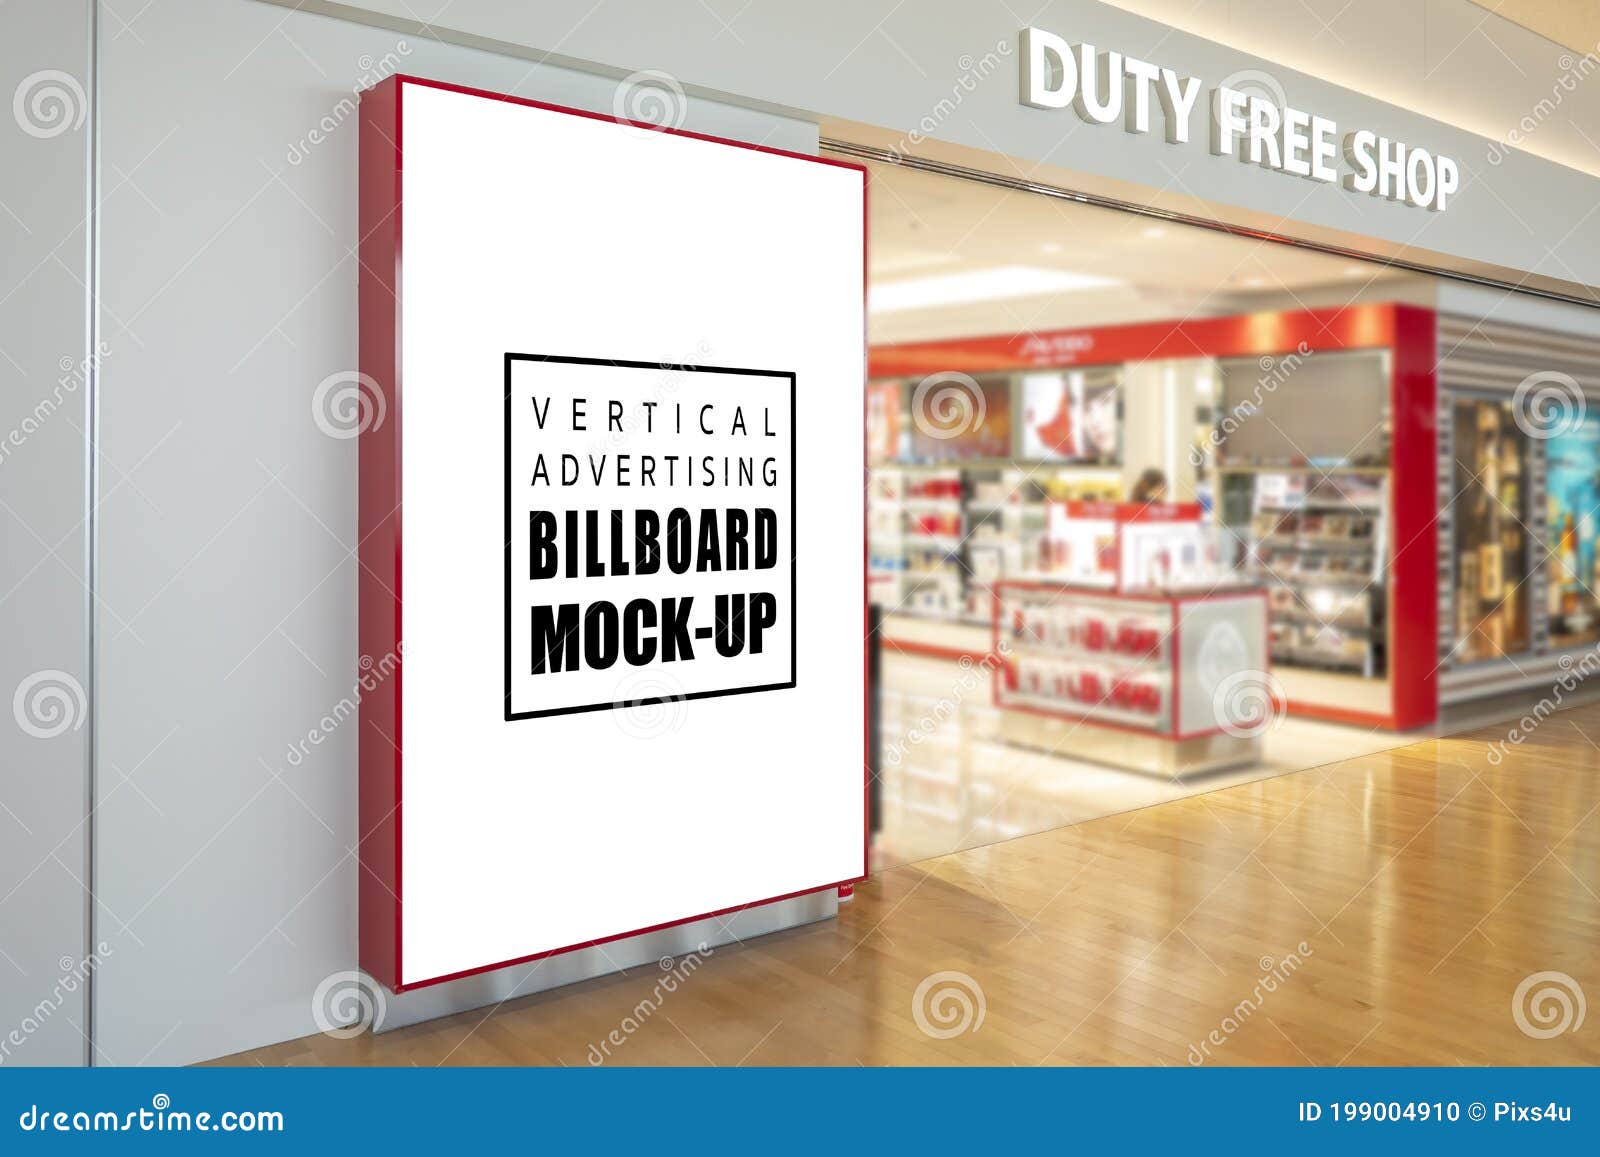 mock up blank large billboard near entrance of duty free shop